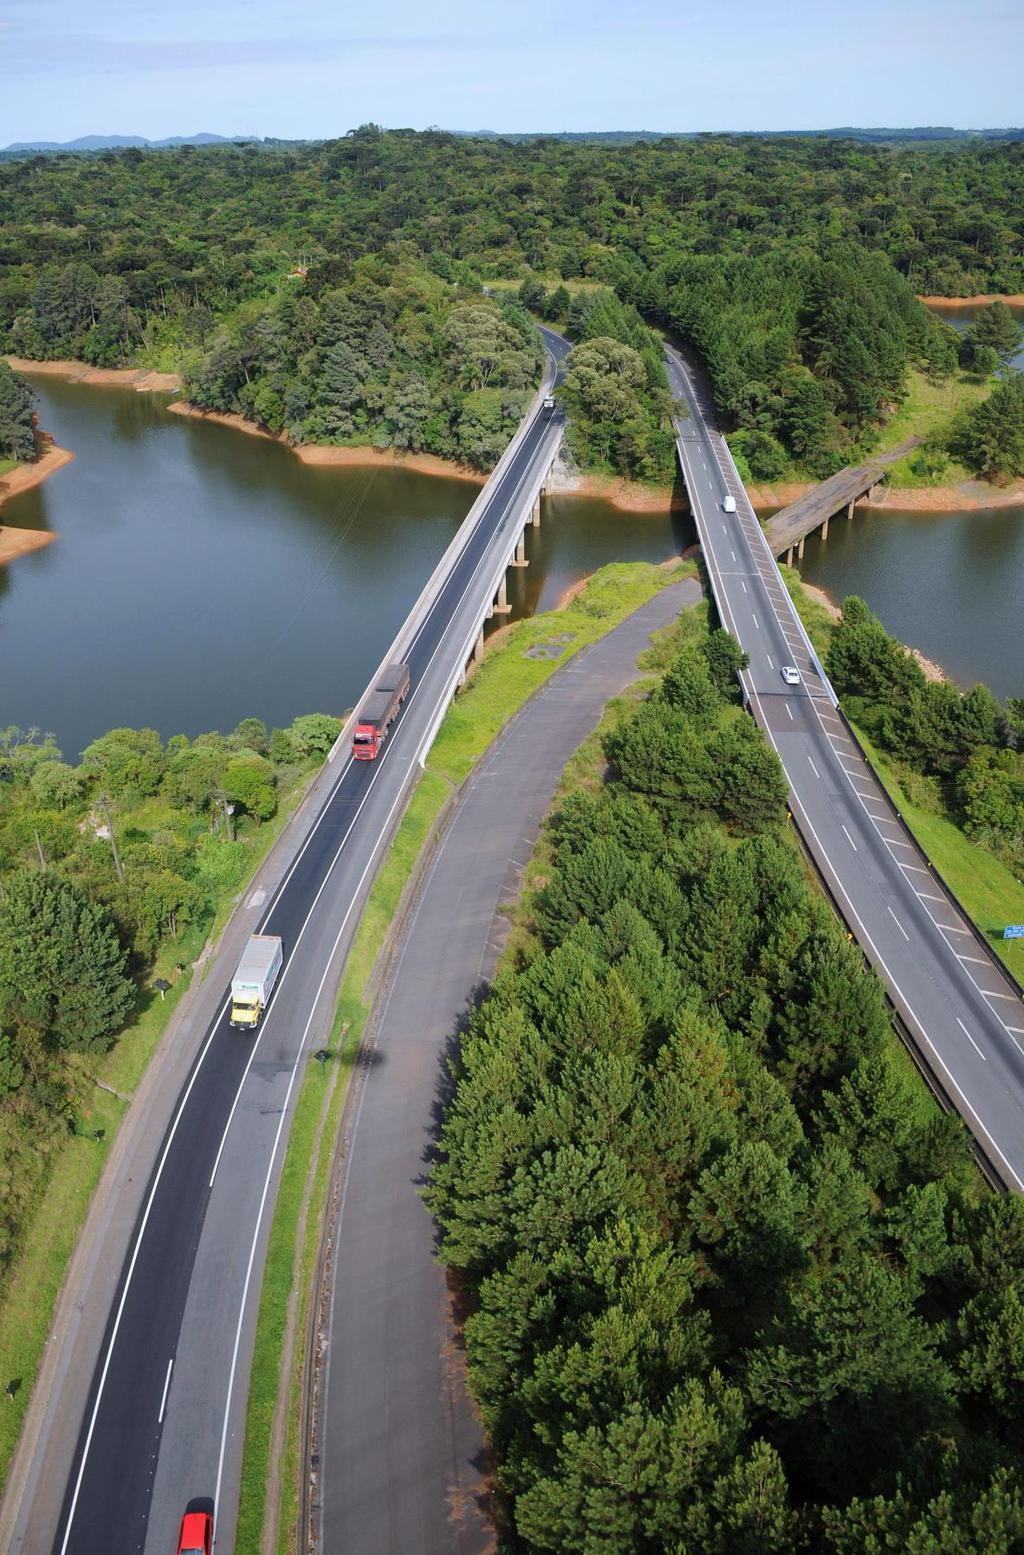 COMPROMISSO ARTERIS Foco em investimentos nas atuais concessões Atendimento de qualidade aos usuários das rodovias Prioridade para a segurança viária Visão de longo prazo